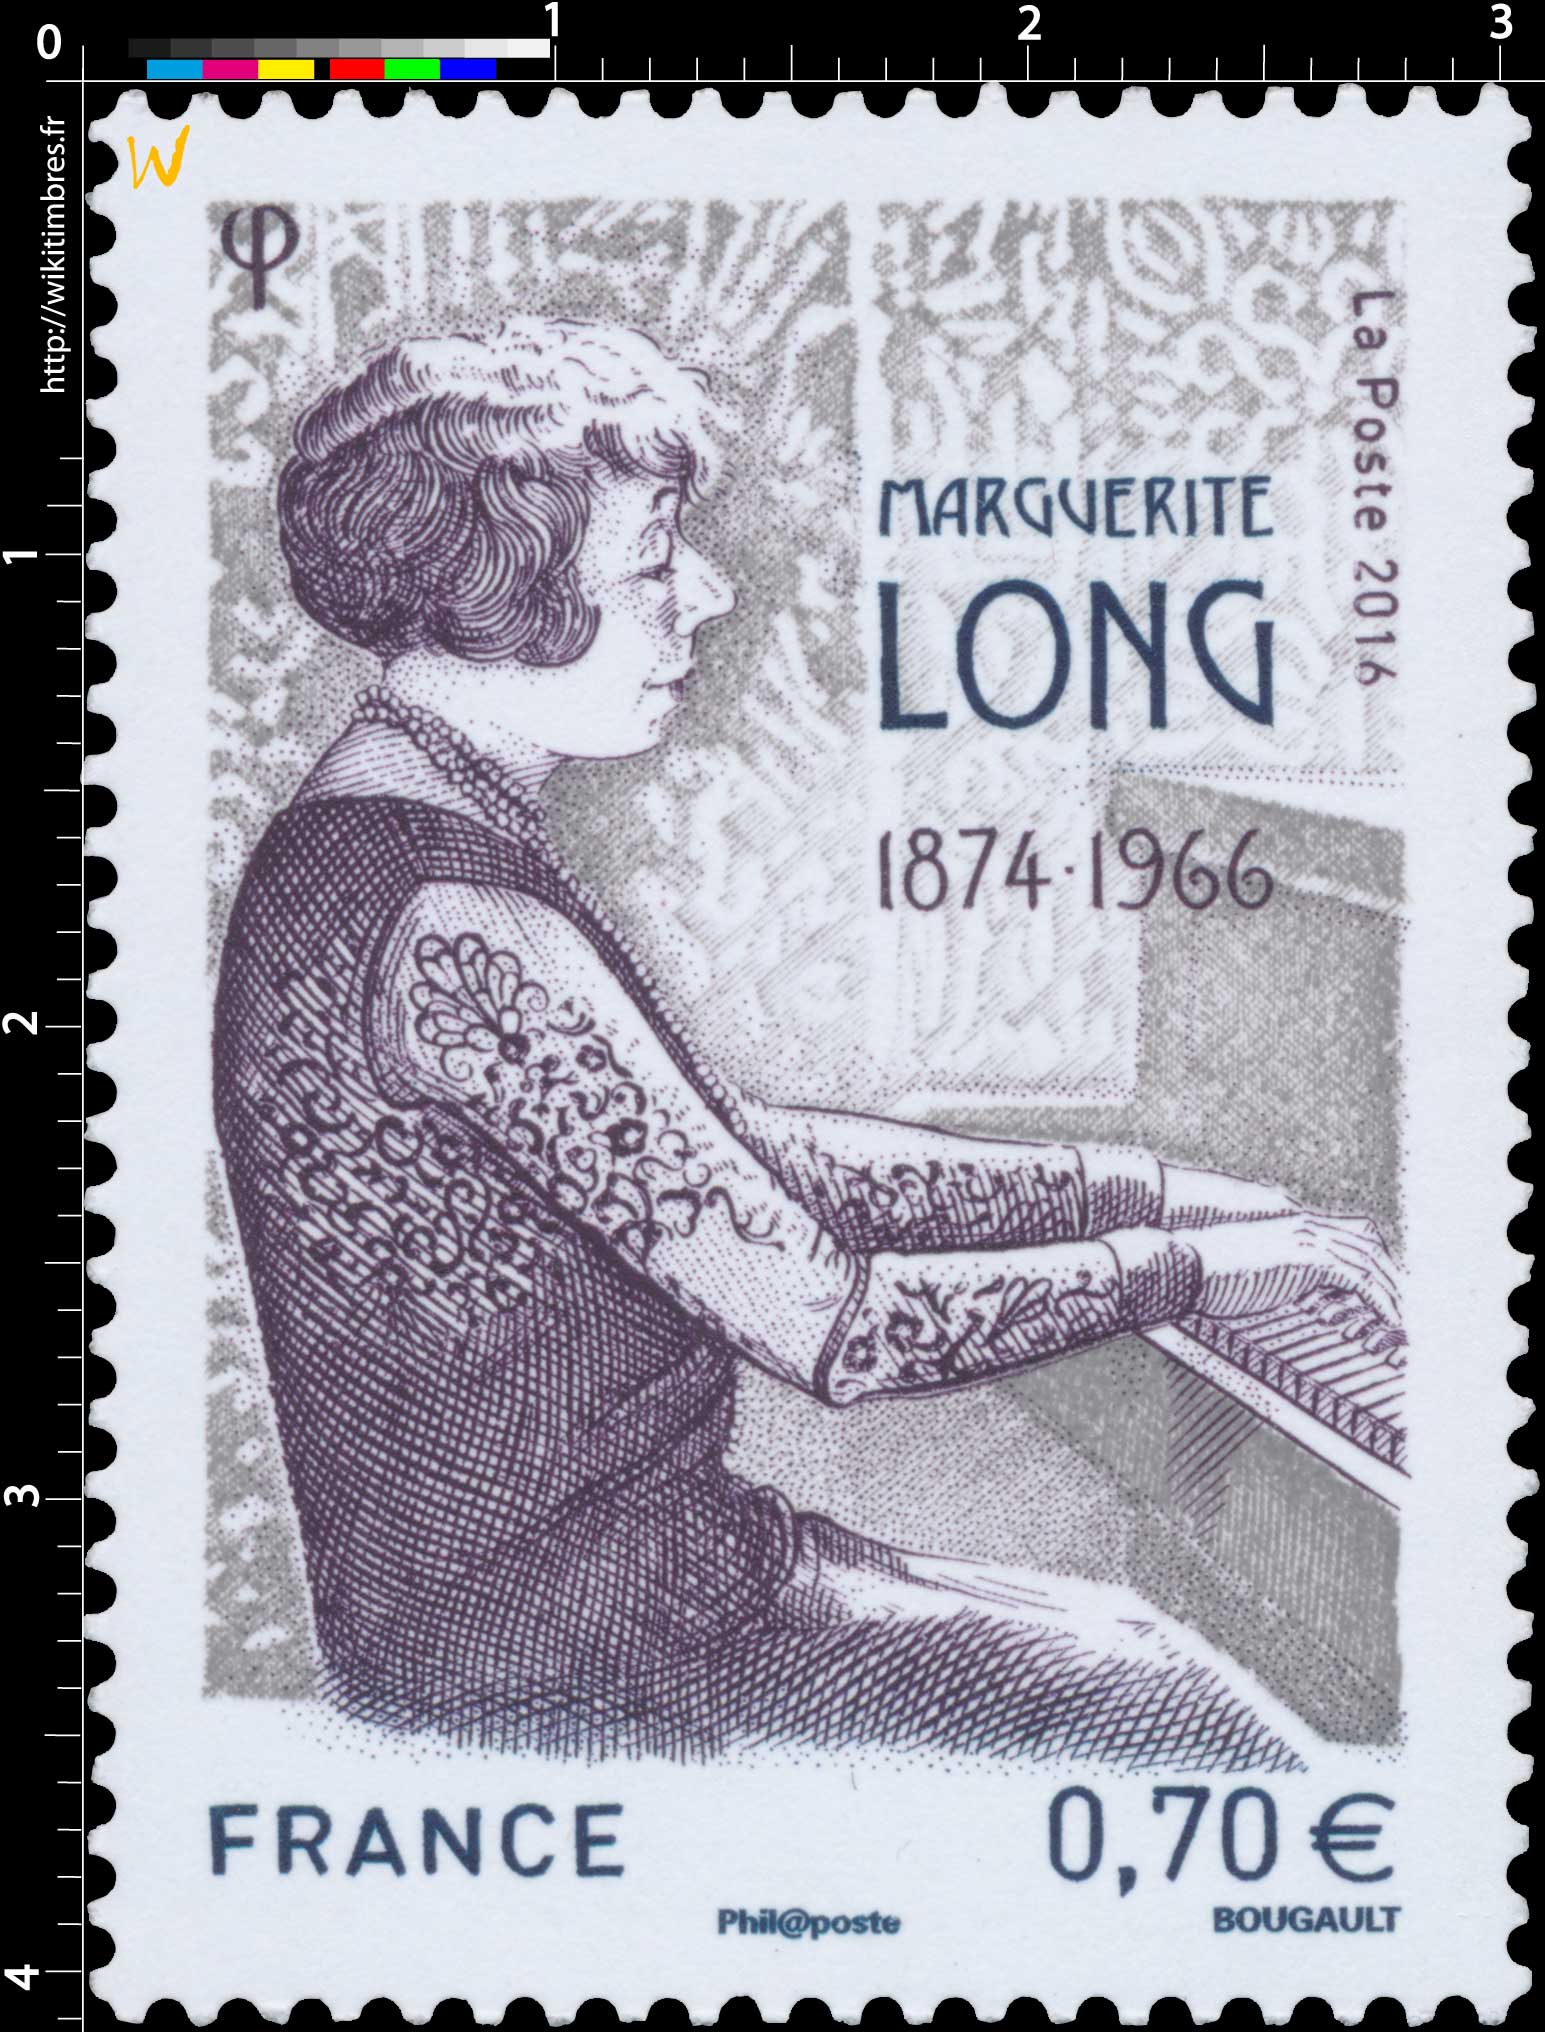 2016 Marguerite Long 1874-1966